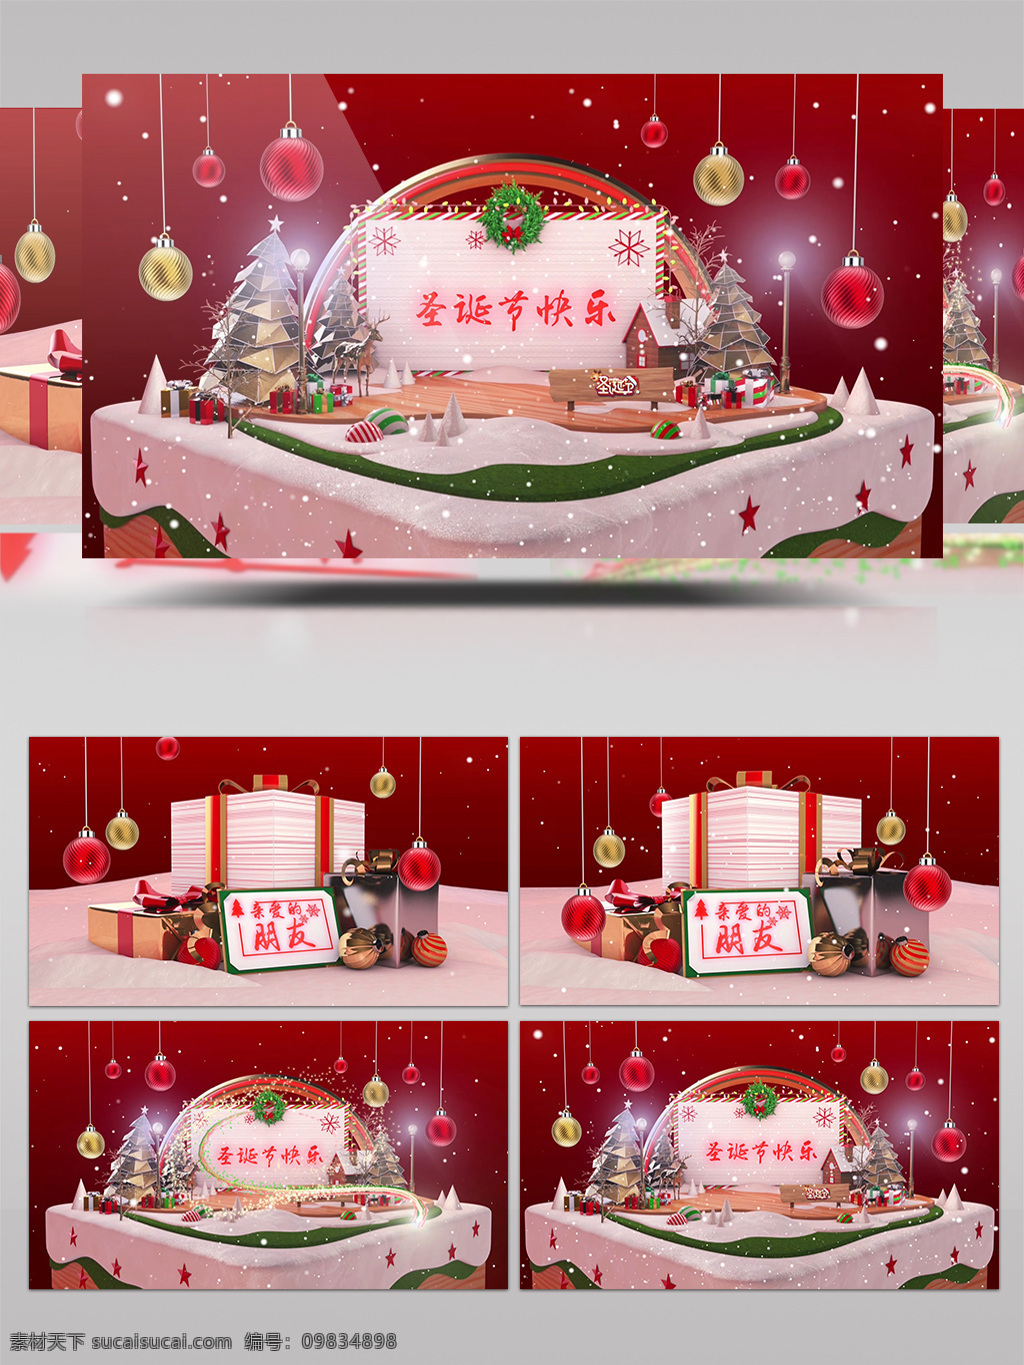 圣诞节 蛋糕 祝福 礼物 ae 模板 相册 包装 雪景 雪花 片头 片尾 周年 日 纪念 展示 冰雪 麋鹿 圣诞老人